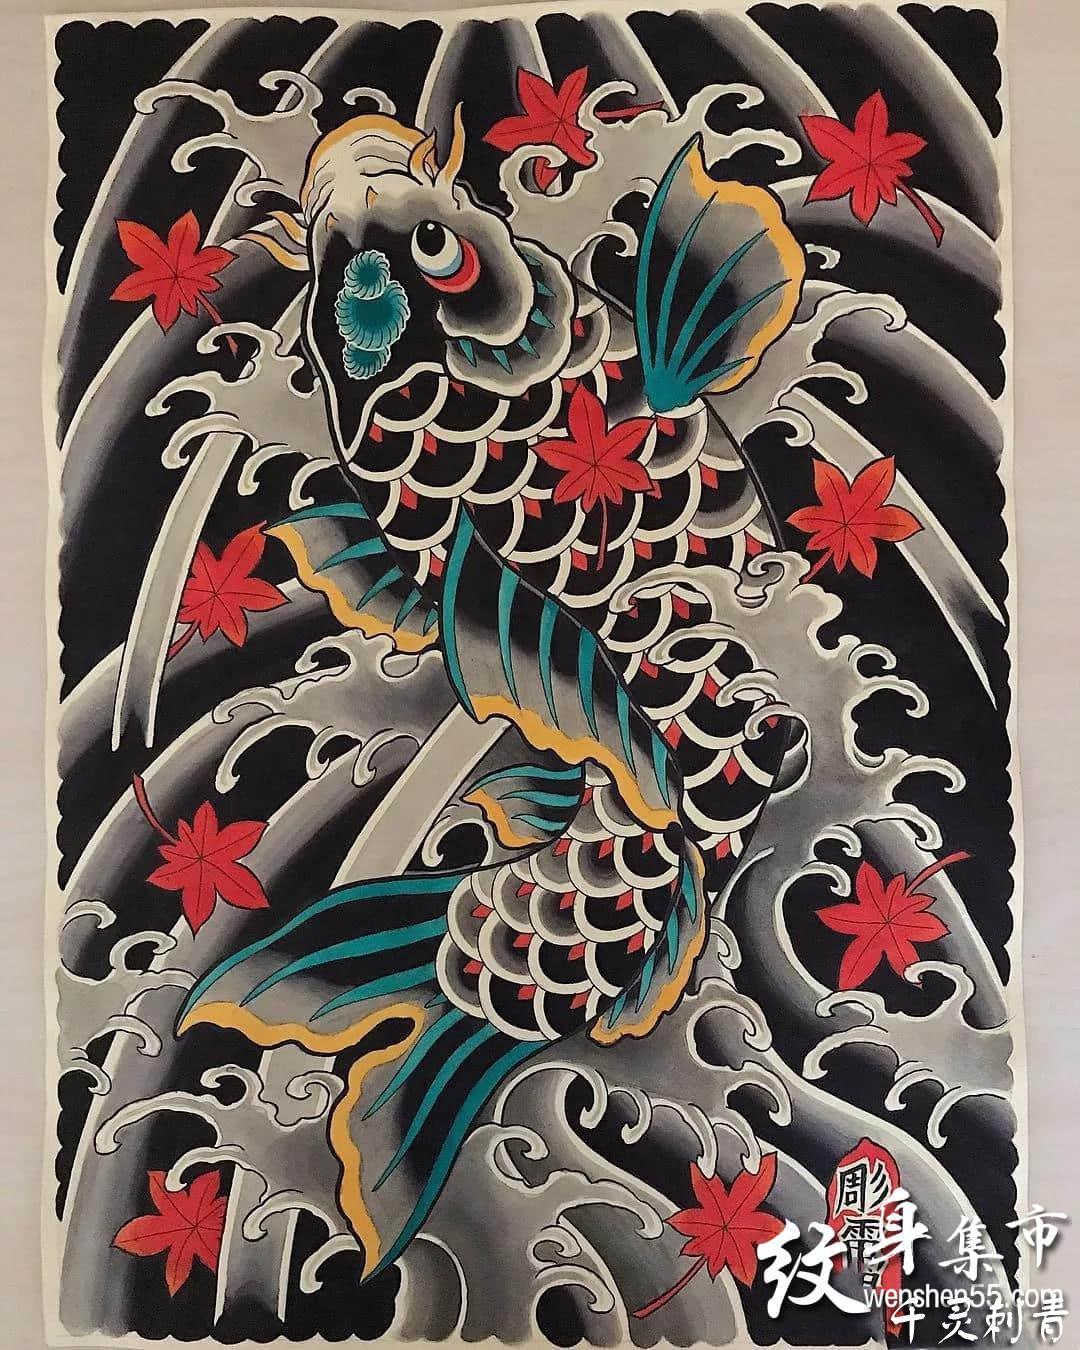 日式鱼纹身,日式鱼纹身手稿,日式鱼纹身手稿图案